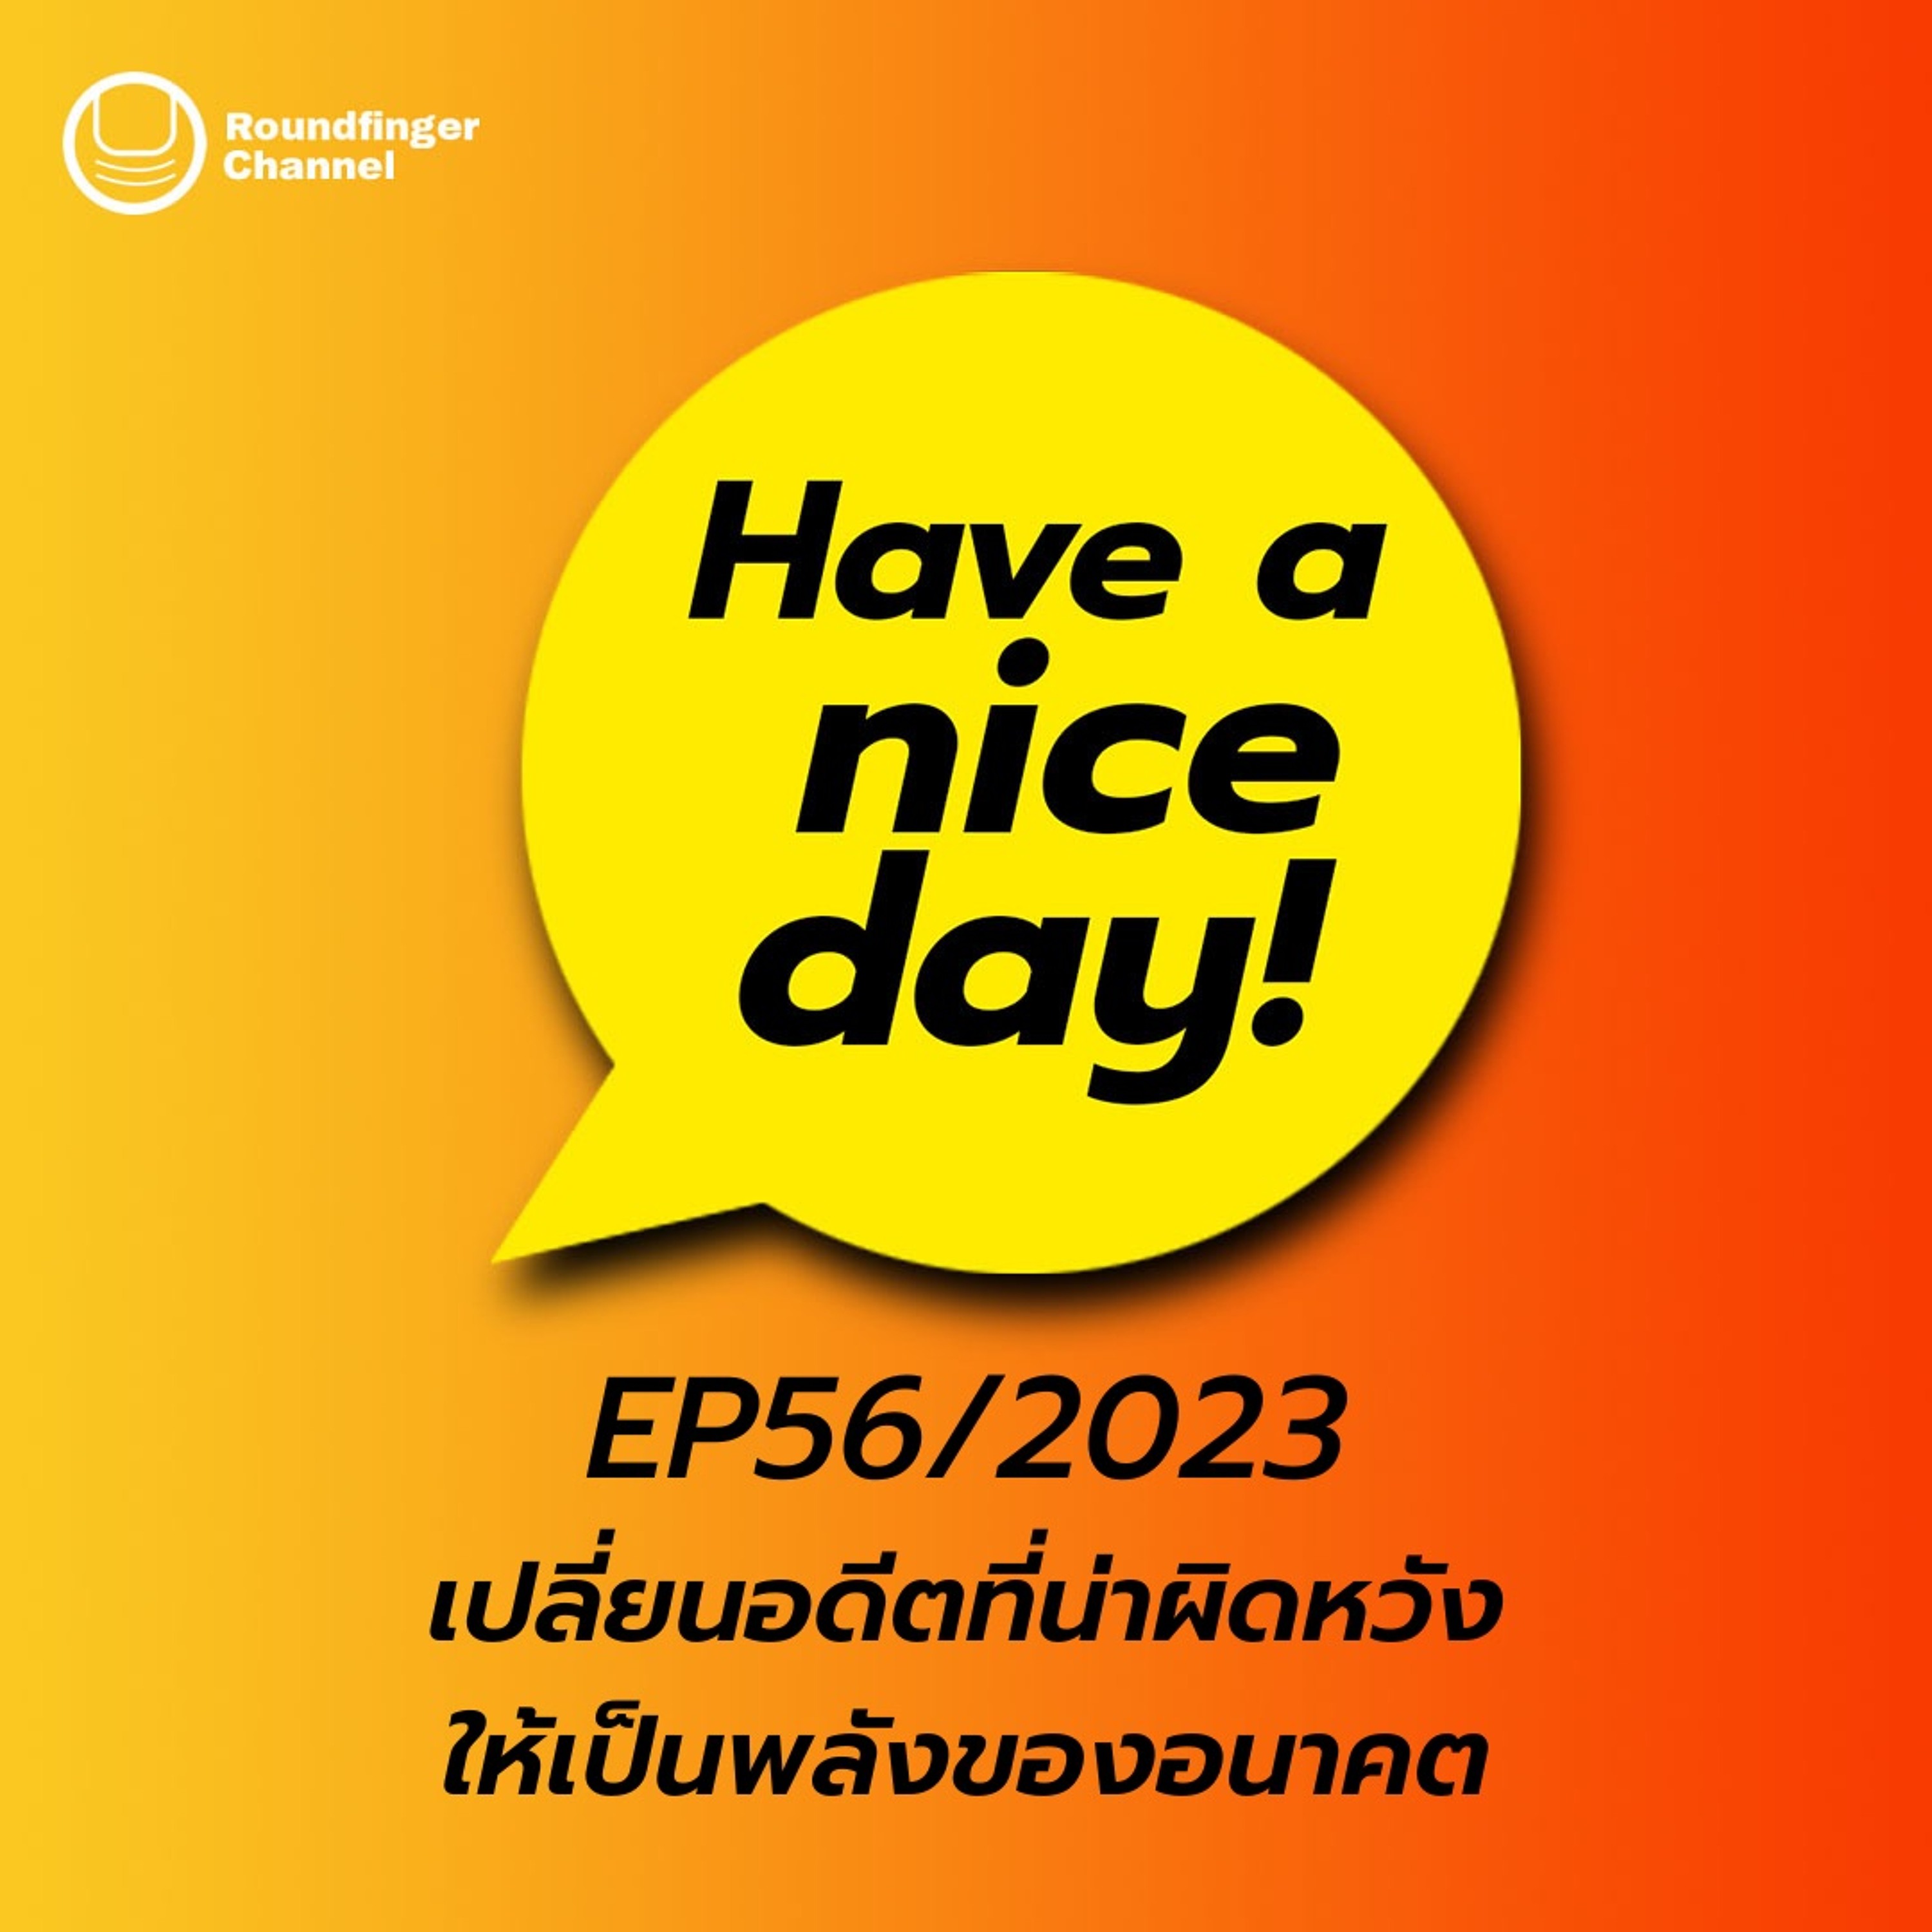 เปลี่ยนอดีตที่น่าผิดหวังให้เป็นพลังของอนาคต | Have A Nice Day! EP56/2023